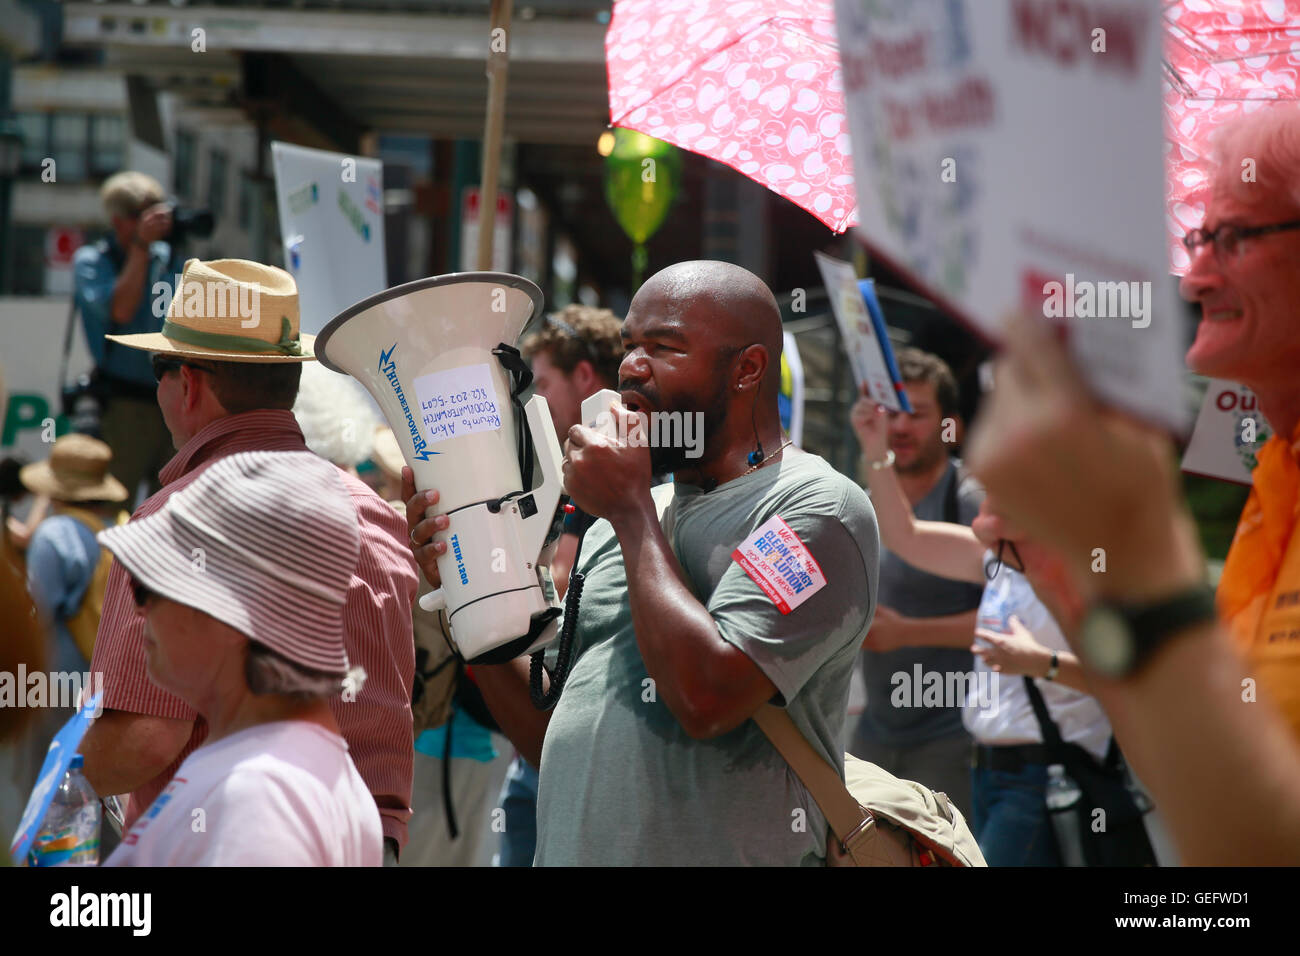 07242016 - Philadelphia, Pennsylvania, los manifestantes demostrar por diversas causas ambientales durante la marcha por las energías limpias. La Convención Nacional del Partido Demócrata que comienza el lunes. (Jeremy Hogan) Foto de stock